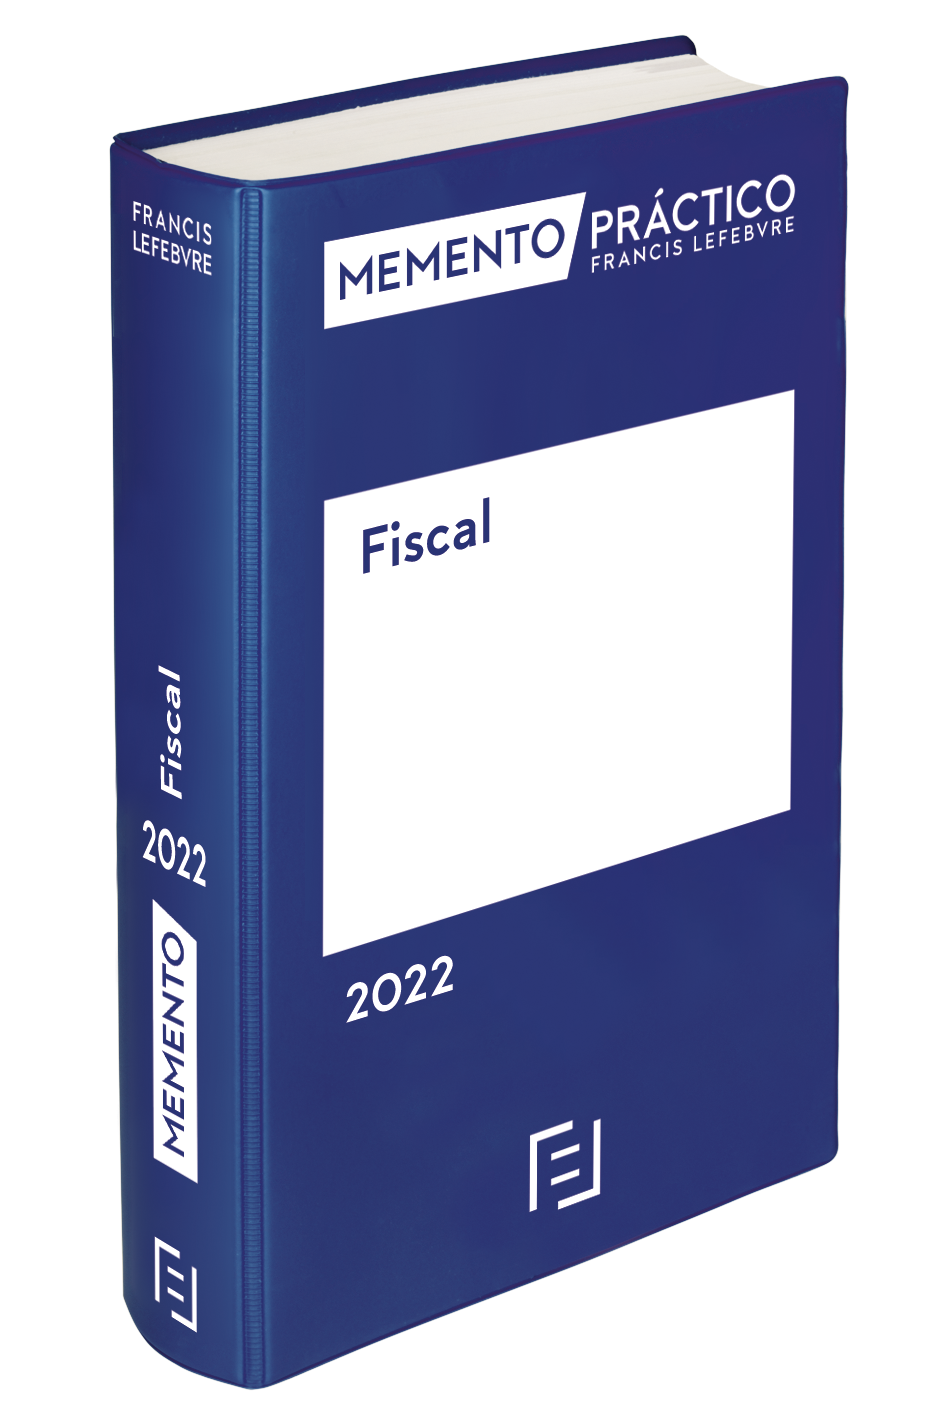 Foto de Memento Fiscal Lefebvre 2022